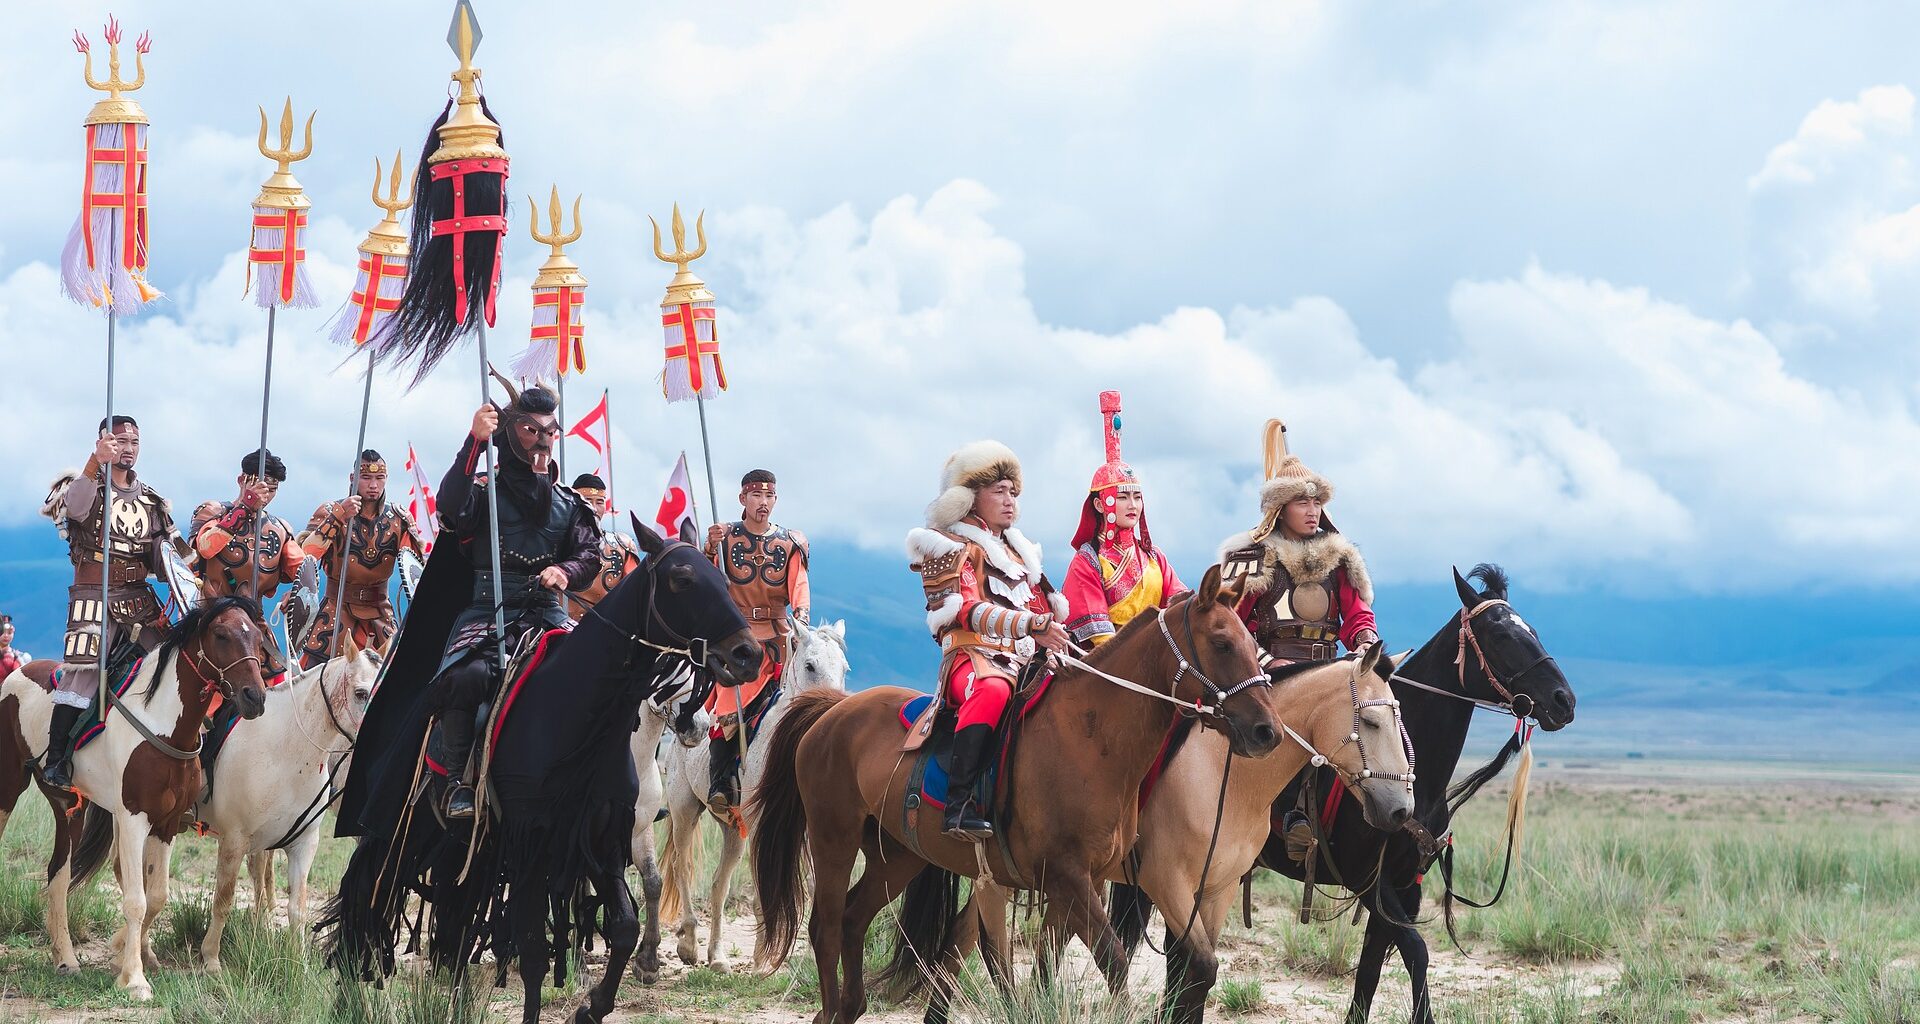 Mongolia naadam festival opening ceremony